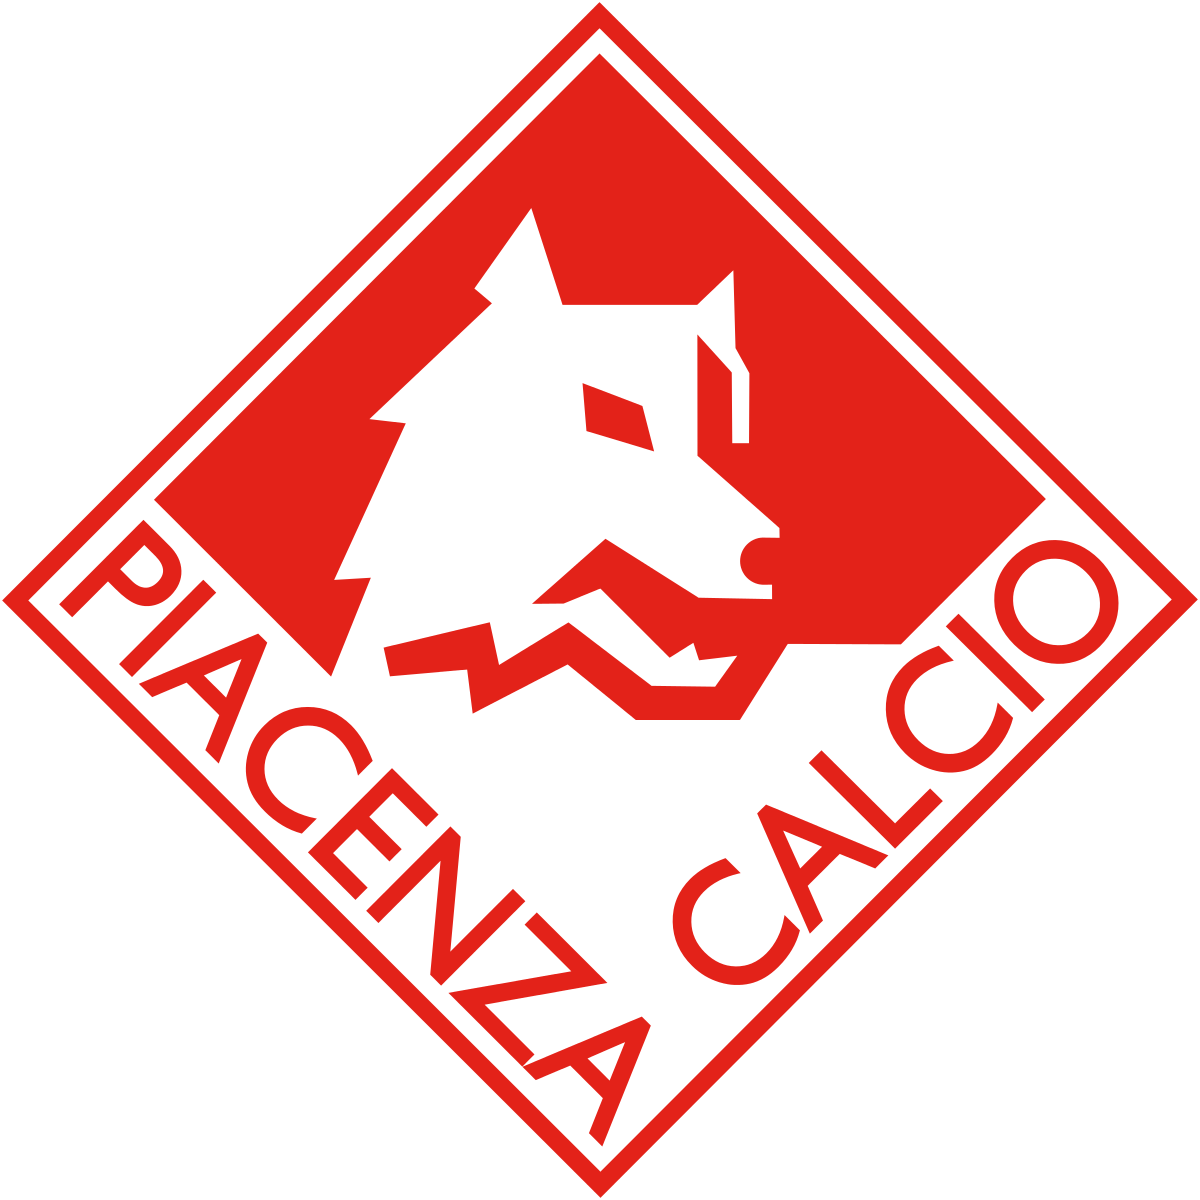 L’avversario di turno: Piacenza Calcio 1919